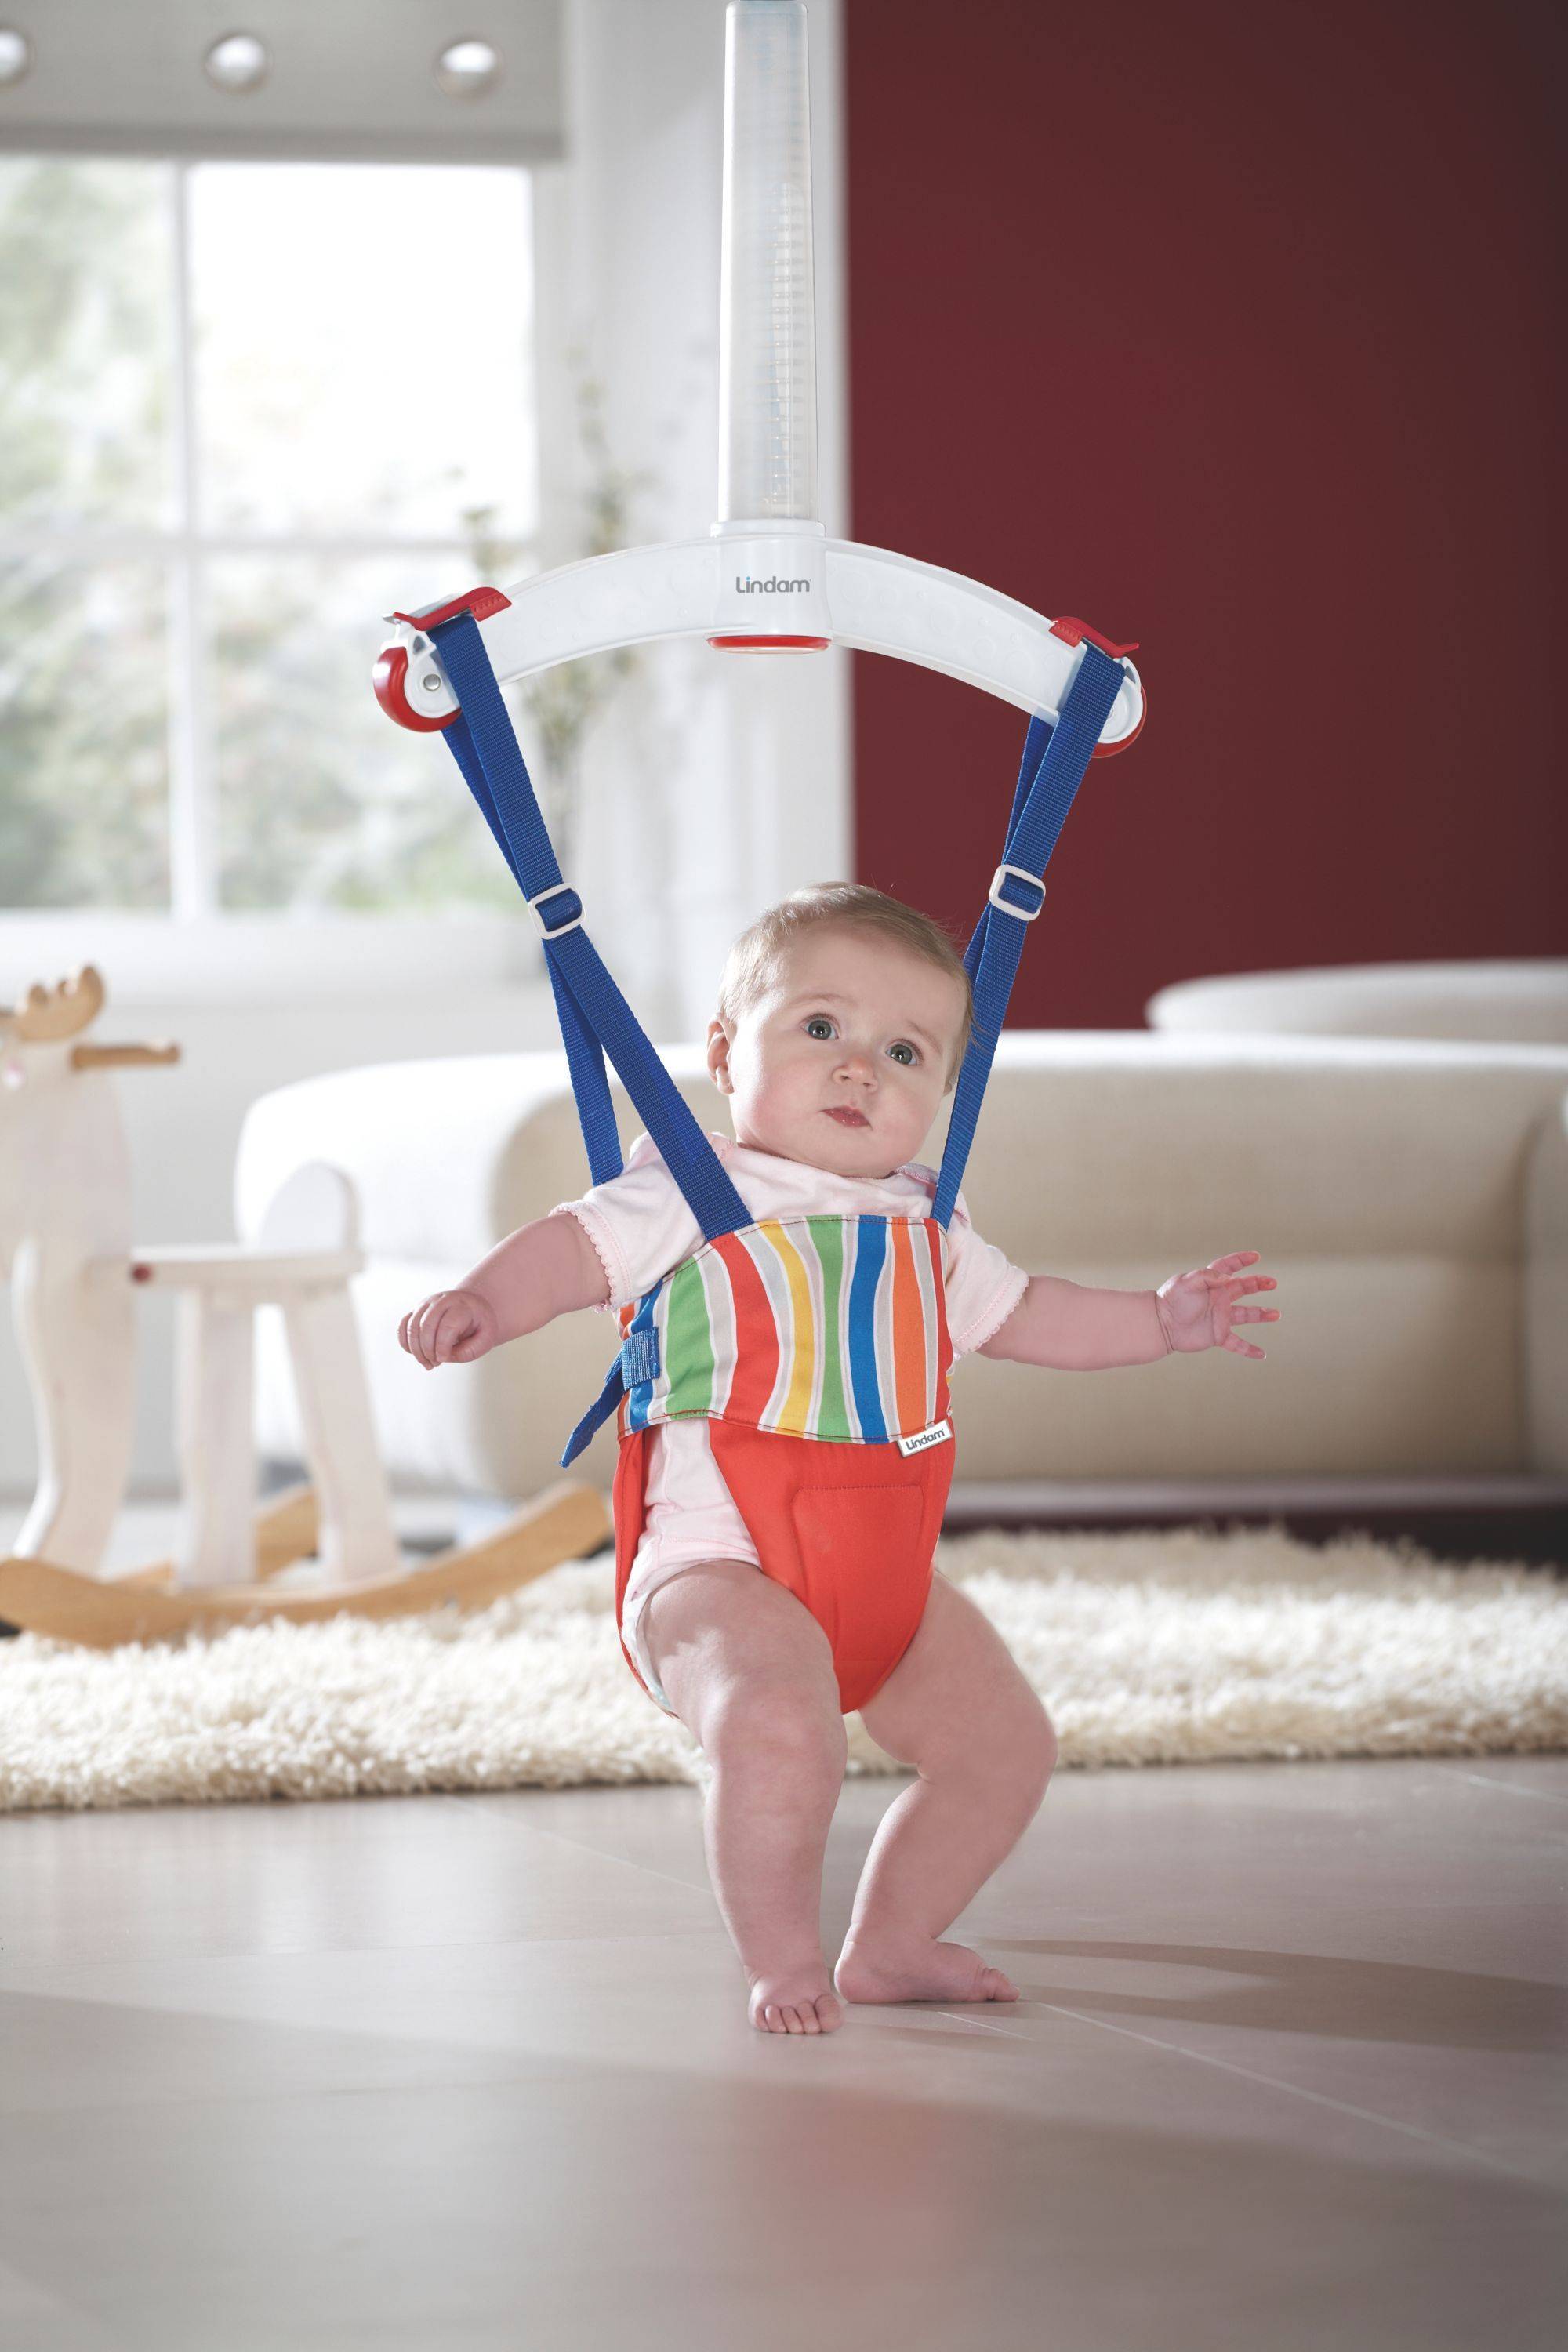 Применение прыгунков для детей: вред или польза?